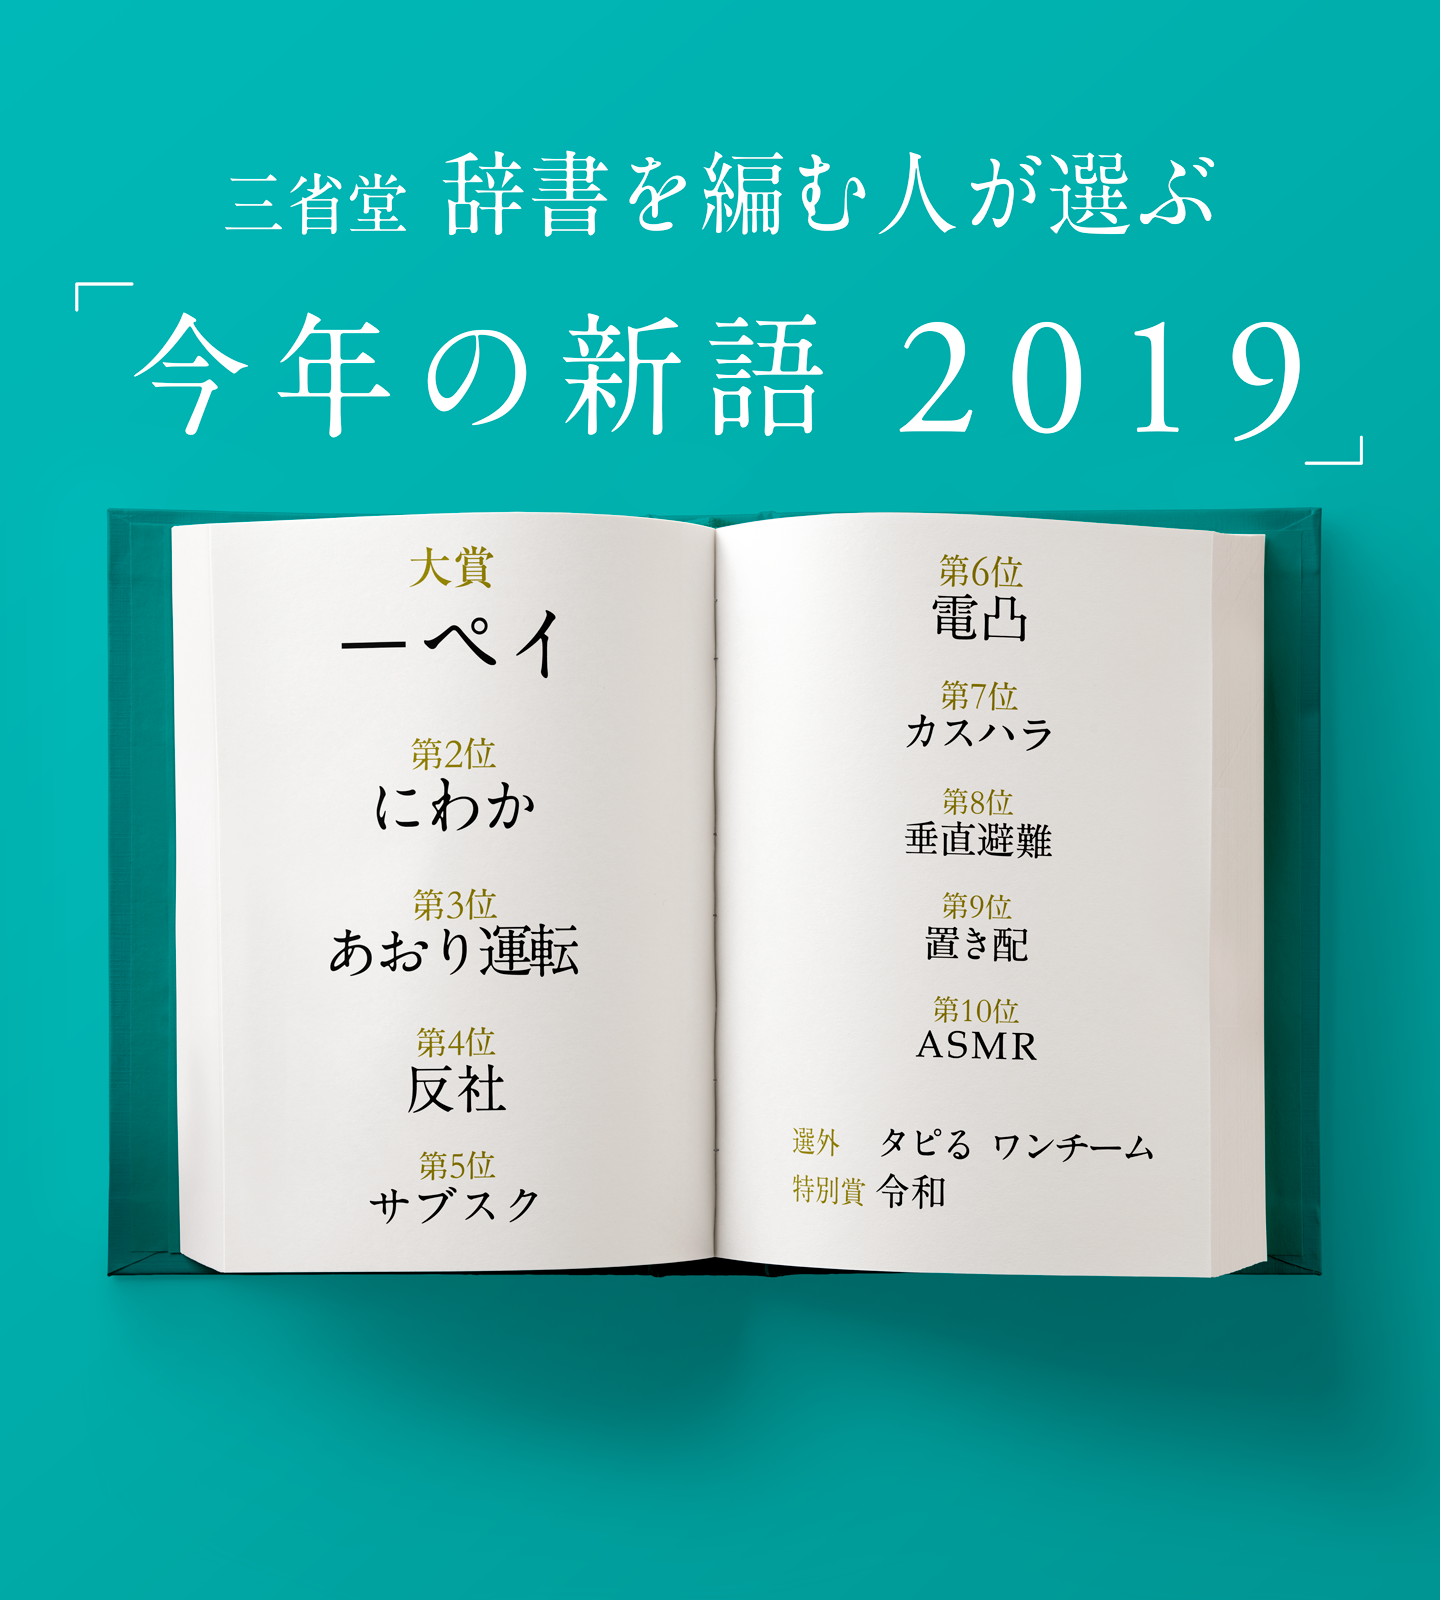 過去の選考結果 今年の新語19 ベスト10 三省堂 辞書を編む人が選ぶ 今年の新語